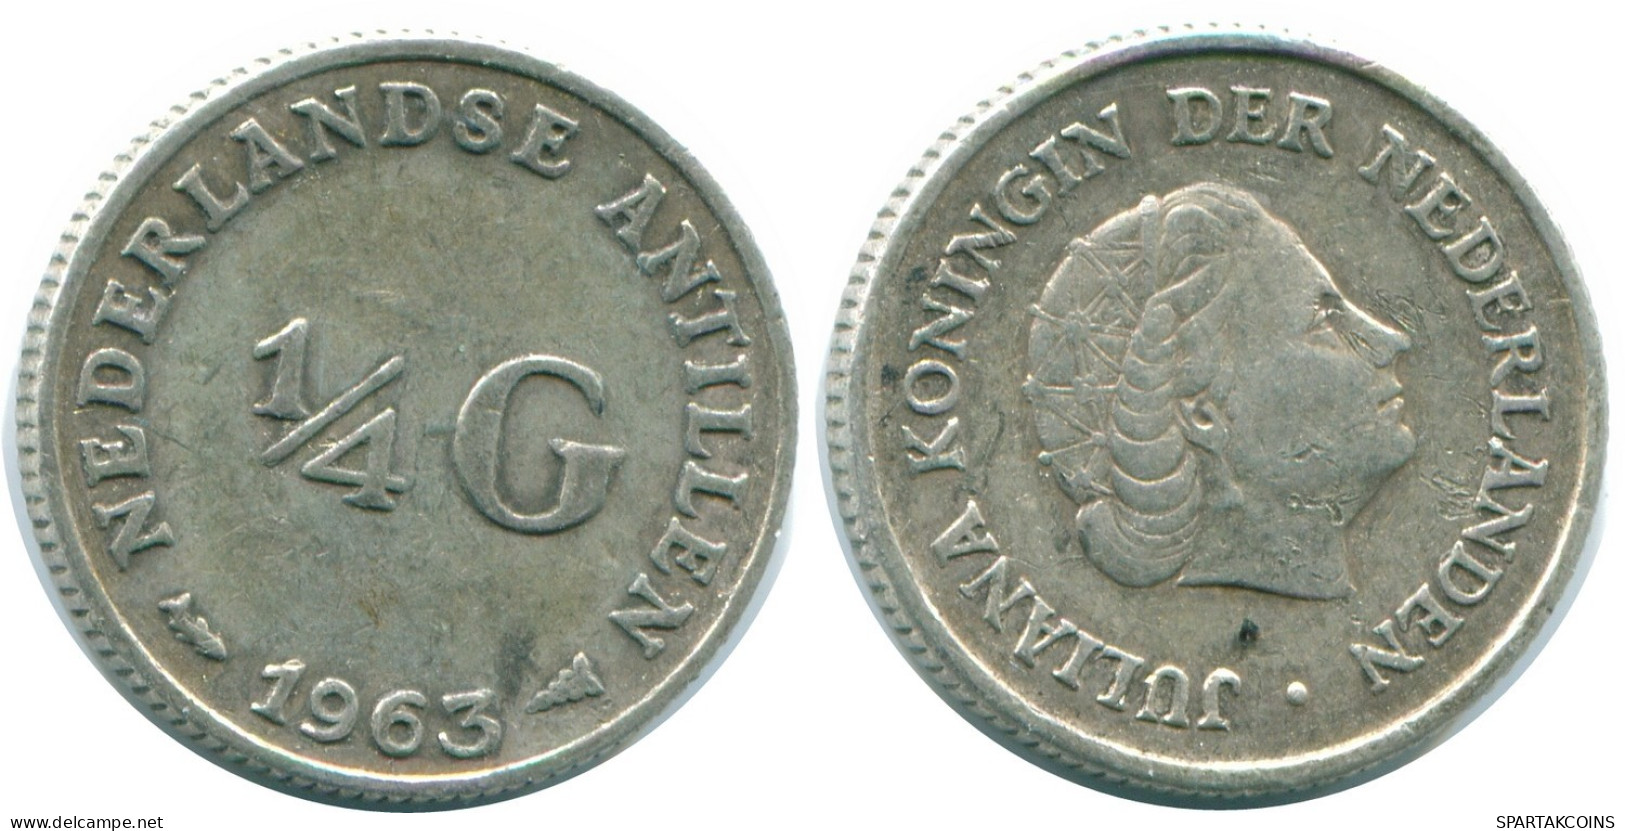 1/4 GULDEN 1963 NIEDERLÄNDISCHE ANTILLEN SILBER Koloniale Münze #NL11197.4.D.A - Niederländische Antillen